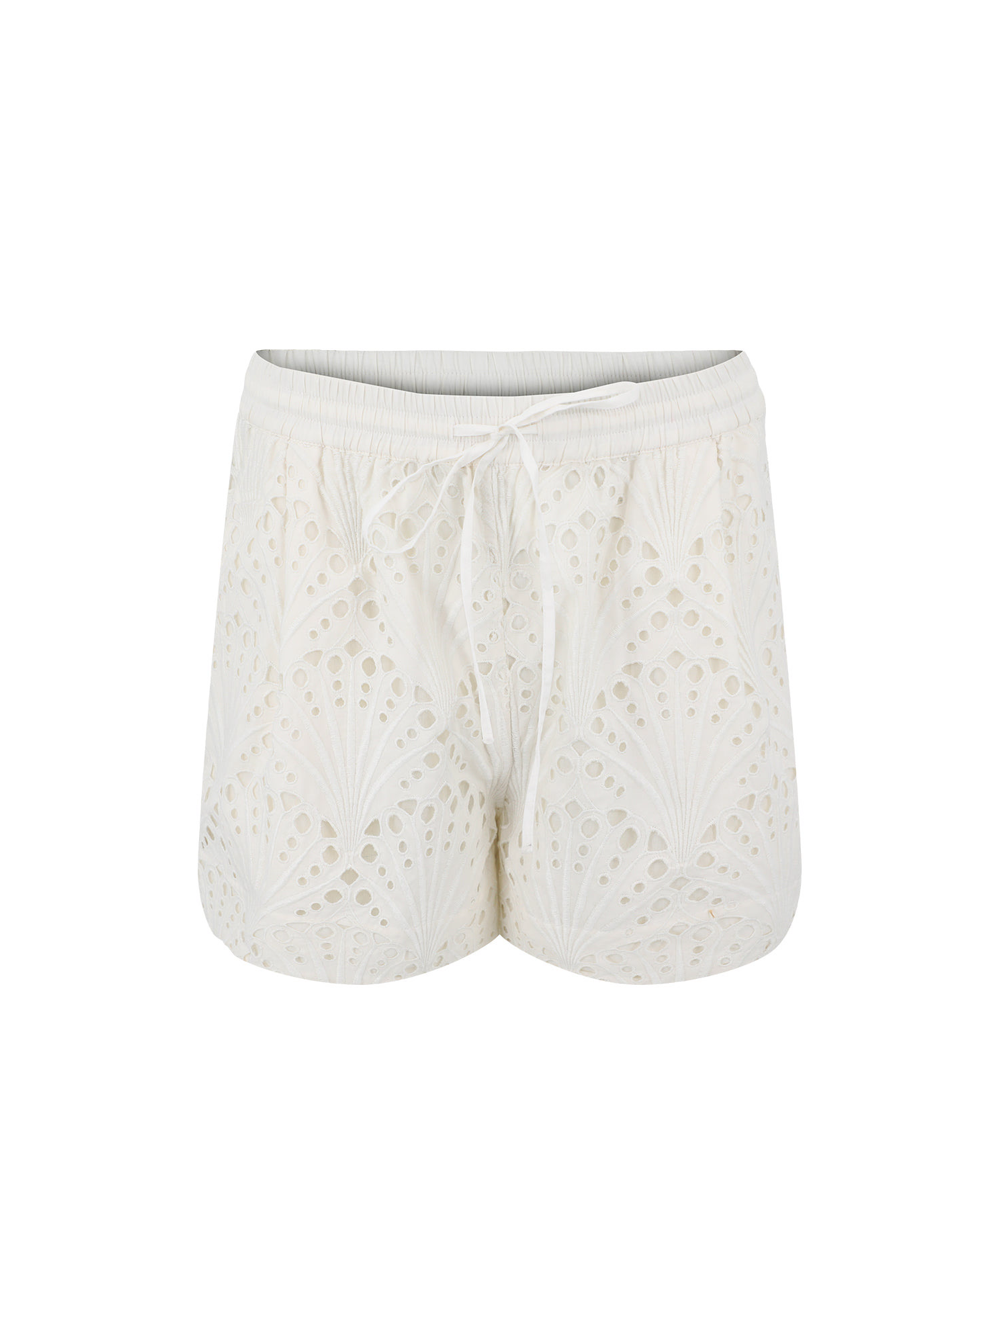 Essentiel Antwerp Femano Shorts in Off-White